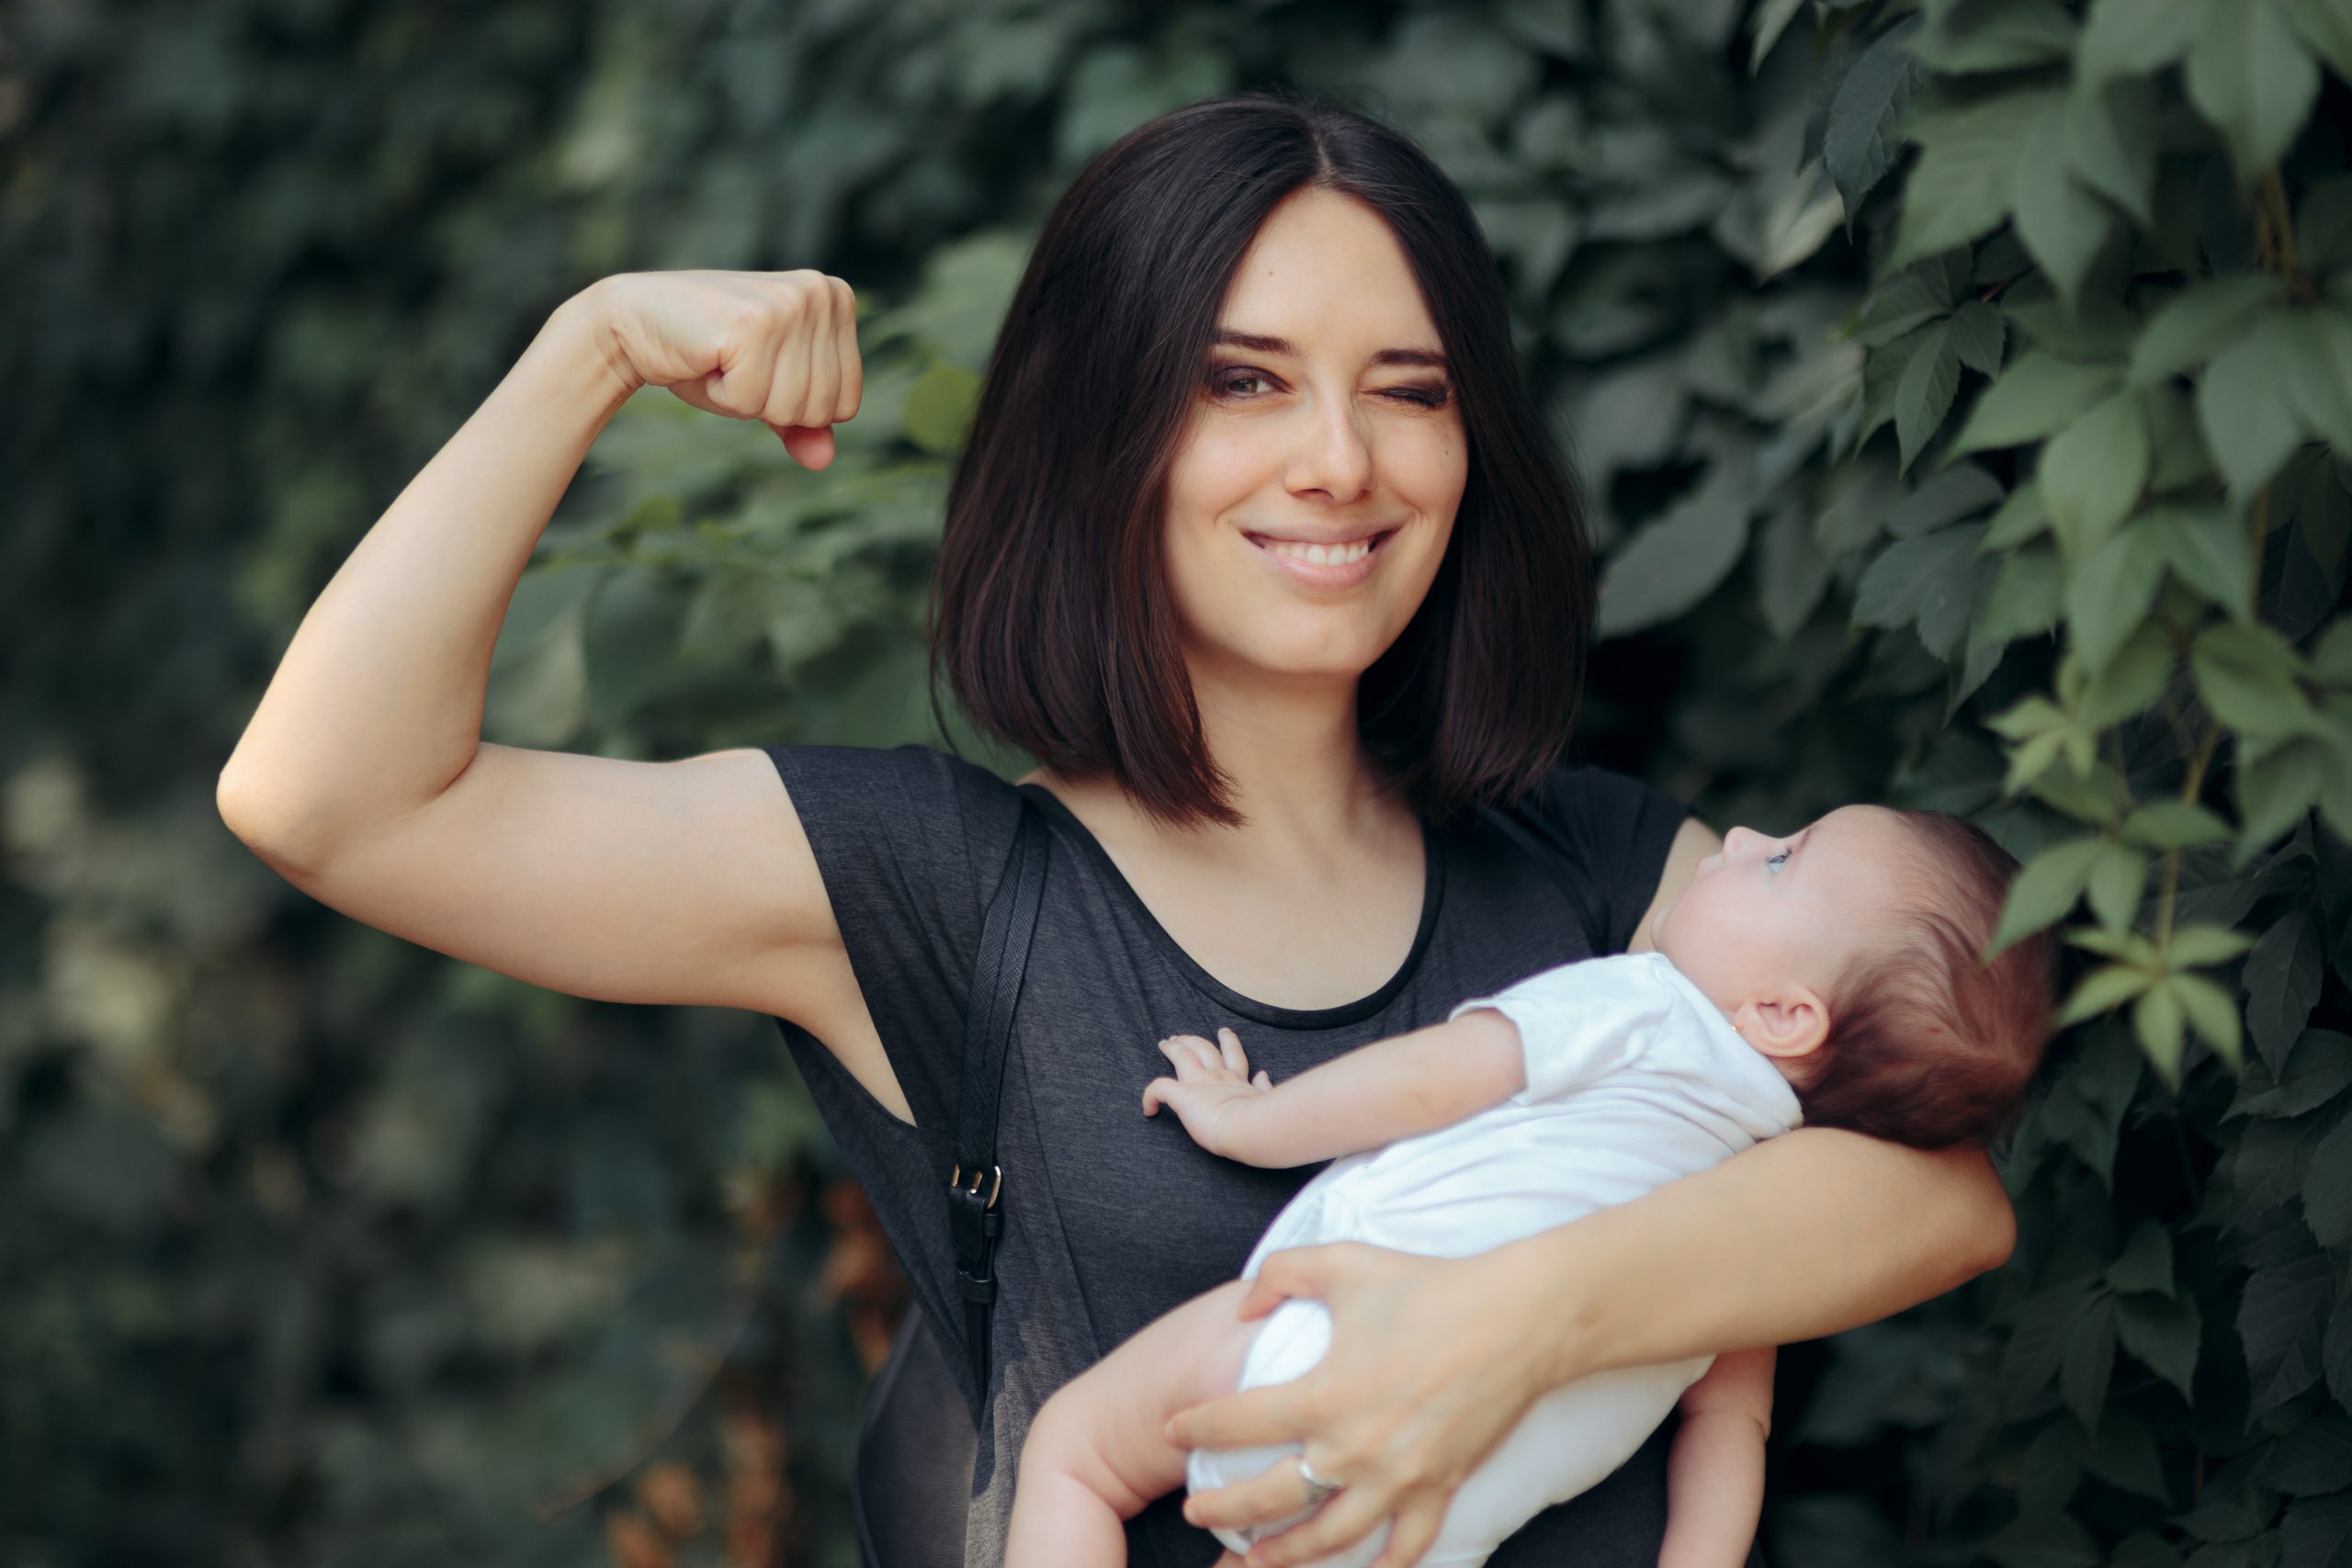 Mutterschaft und Feminismus: Ein Widerspruch?